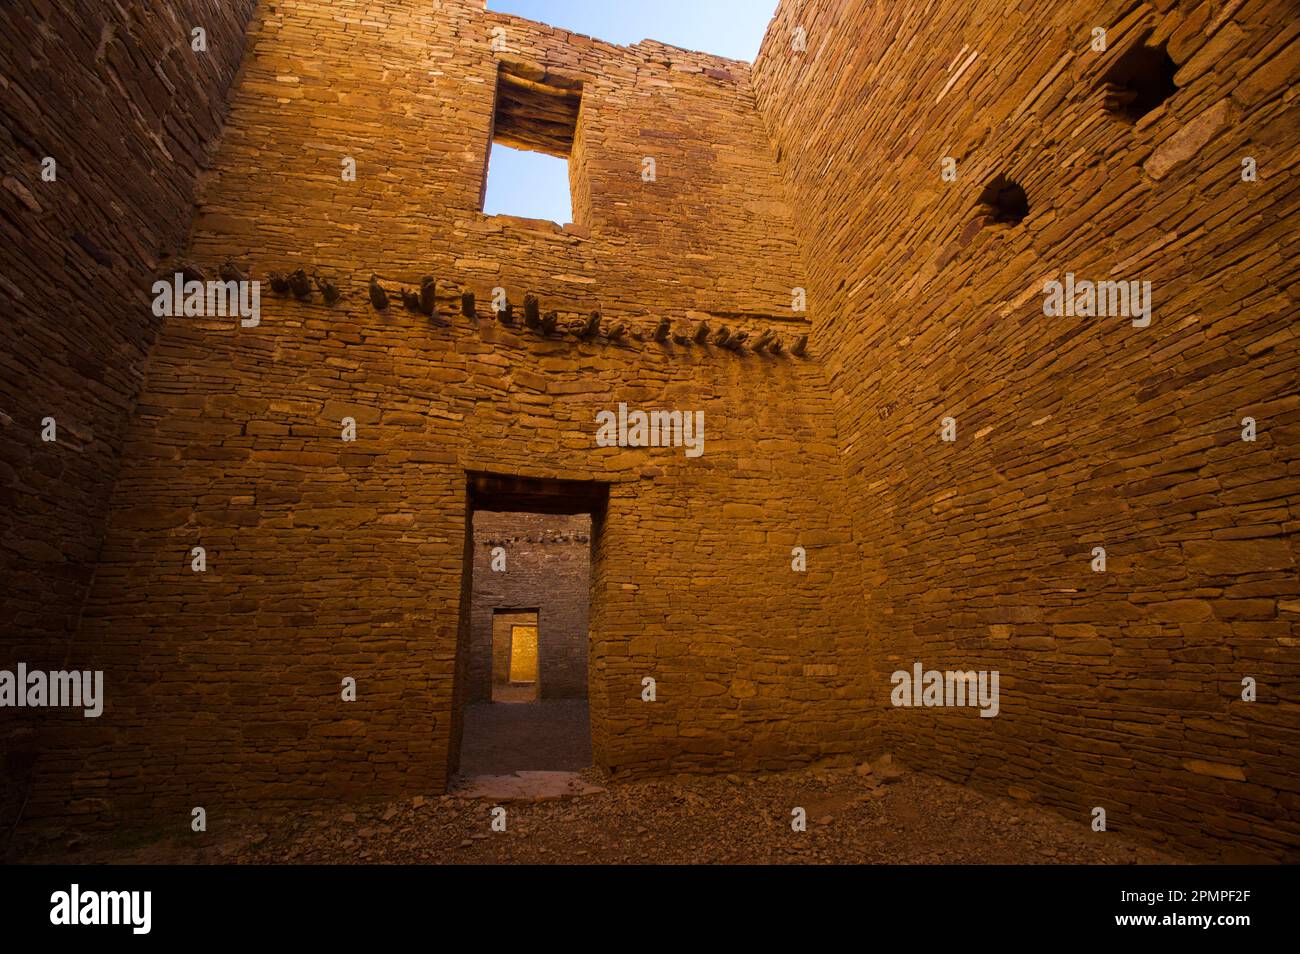 Innenraum eines restaurierten Gebäudes im Pueblo Bonito im Chaco Culture National Historical Park, New Mexico, USA; New Mexico, Vereinigte Staaten von Amerika Stockfoto